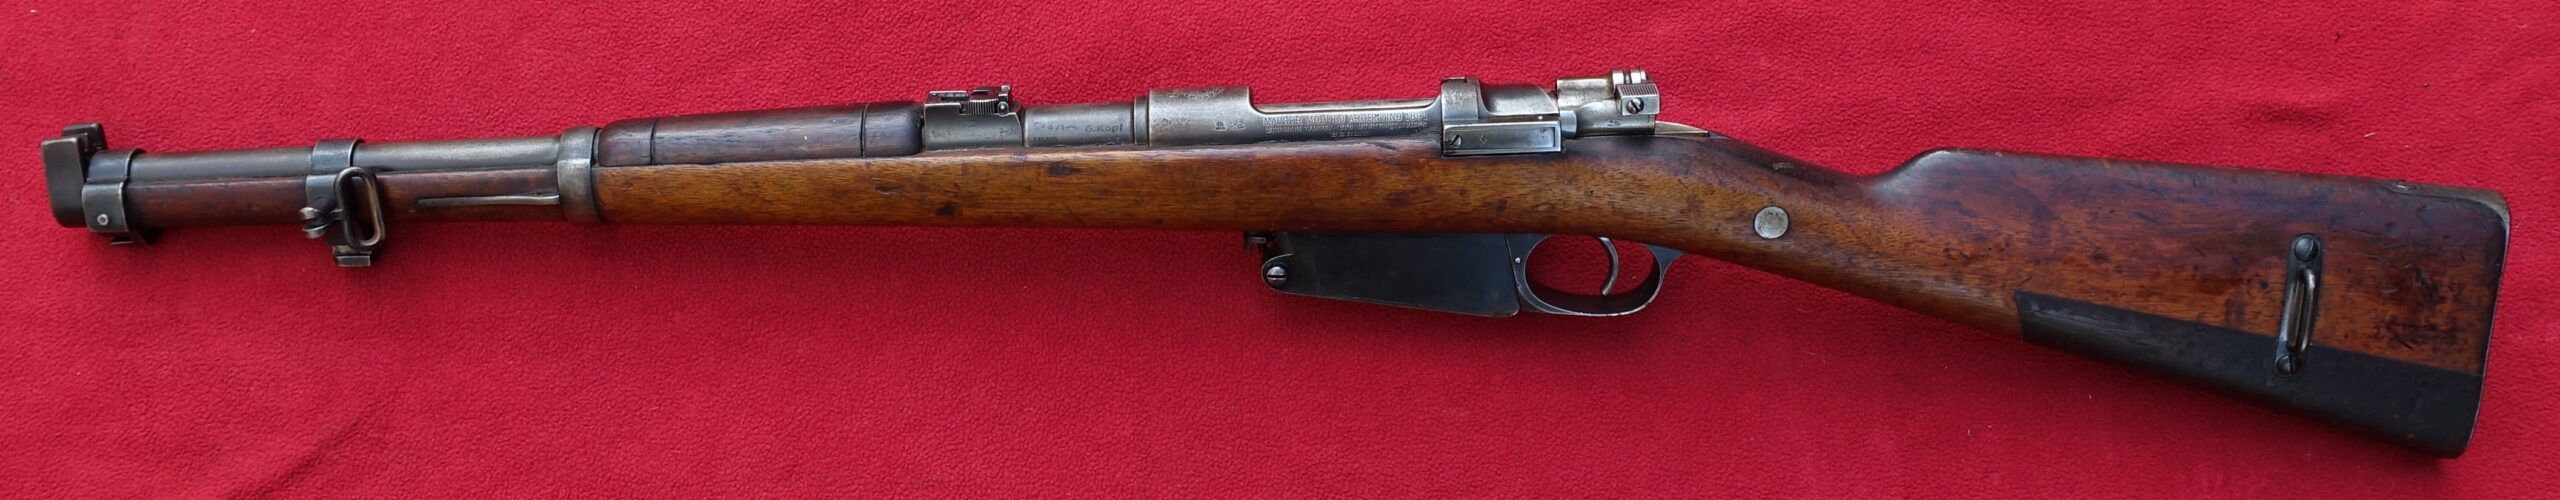 Puška Argentinský Mauser M.1891 - karabina pro technické sbory - Sběratelsk...